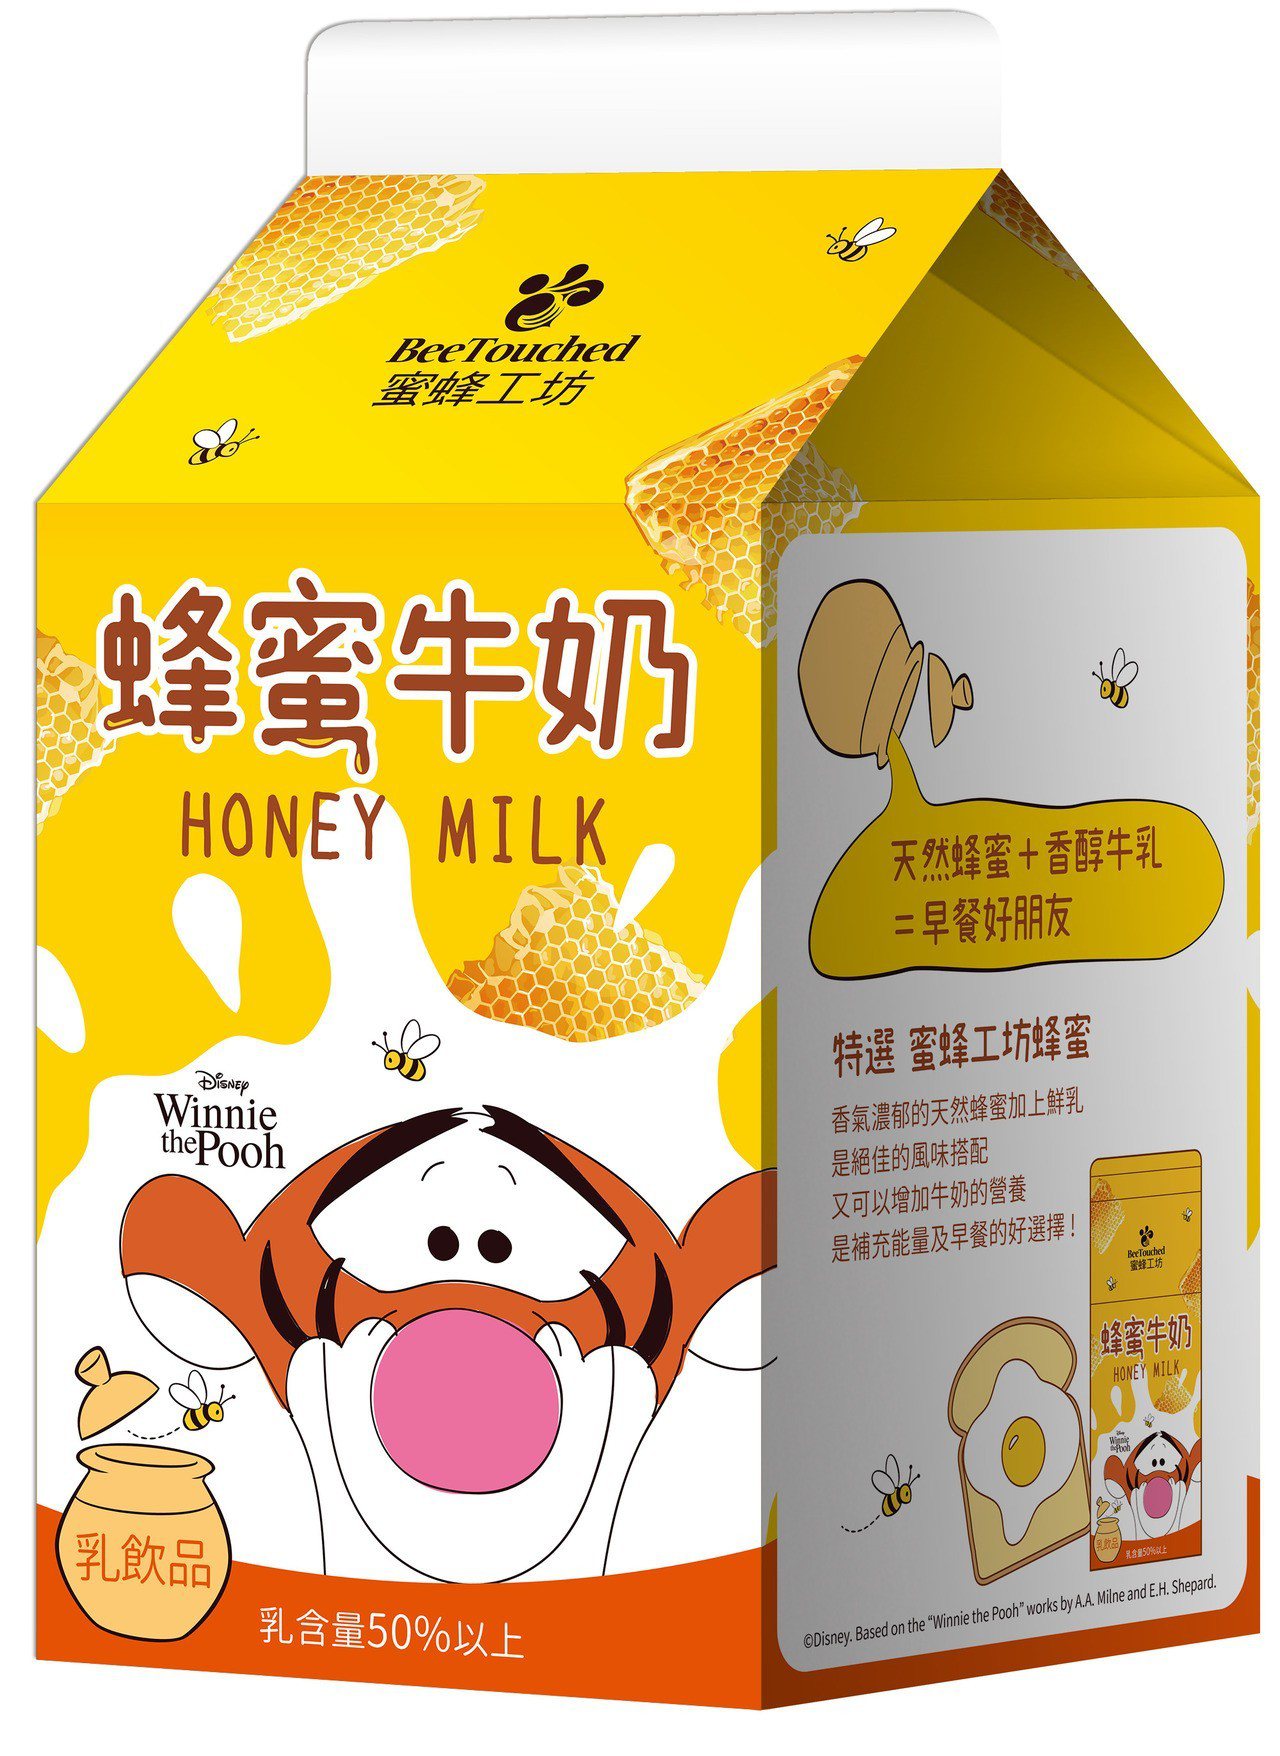 包装 | 晨光蜂蜜酸奶产品包装策略设计-广东小李白广告策划有限公司